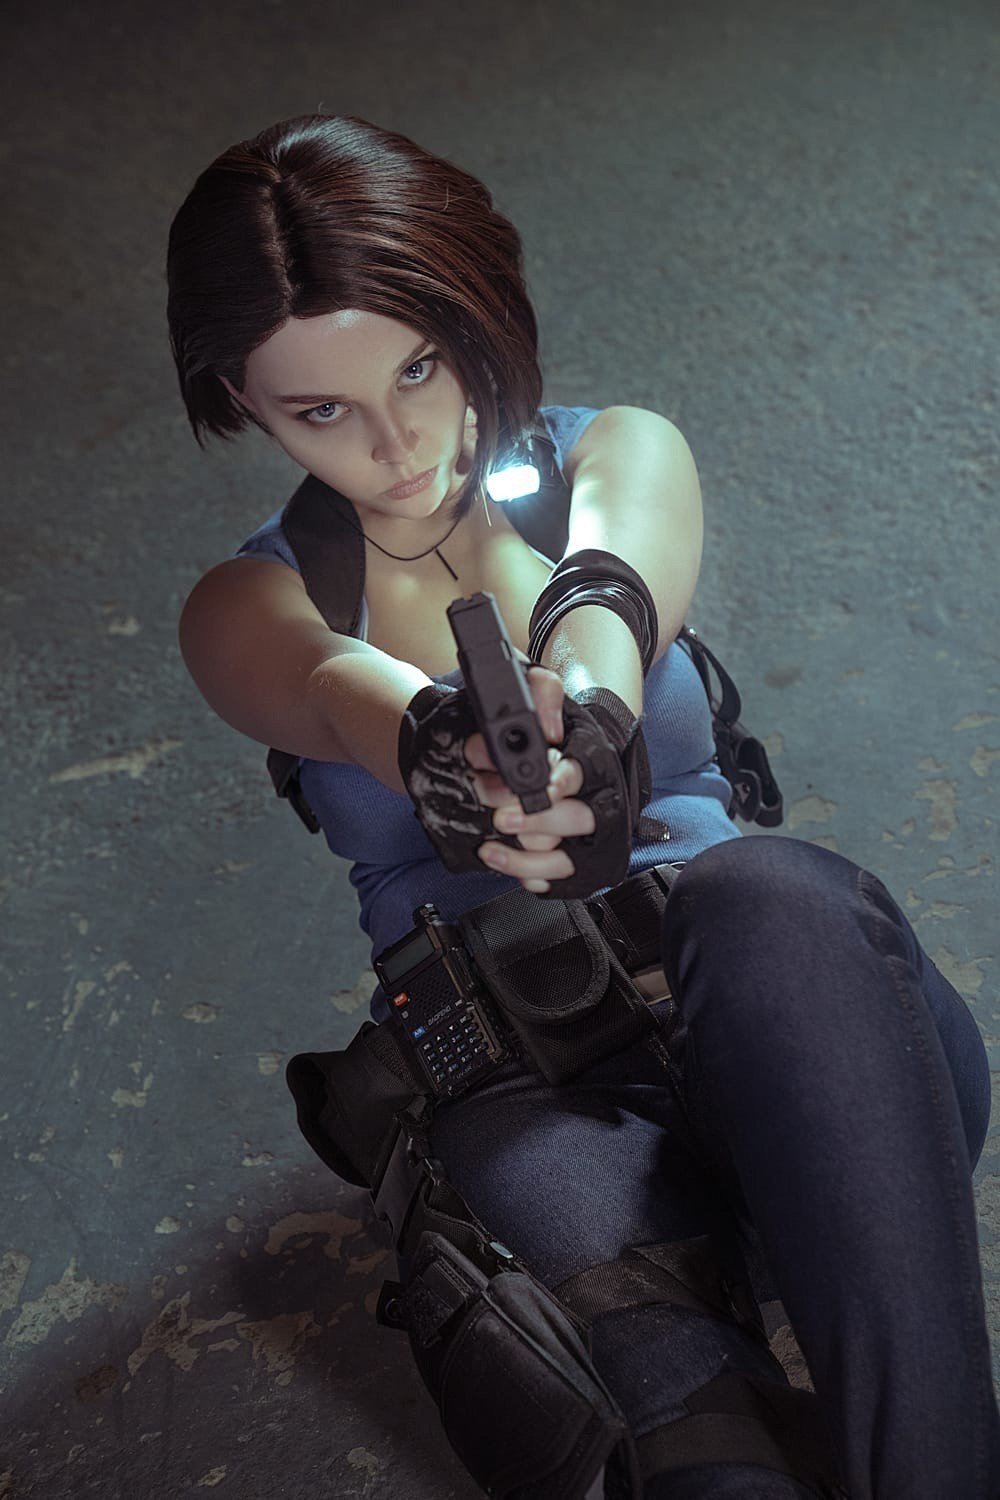 Косплей сексуальная Джилл Валентайн из Resident Evil 3 Remake с большим бюстом